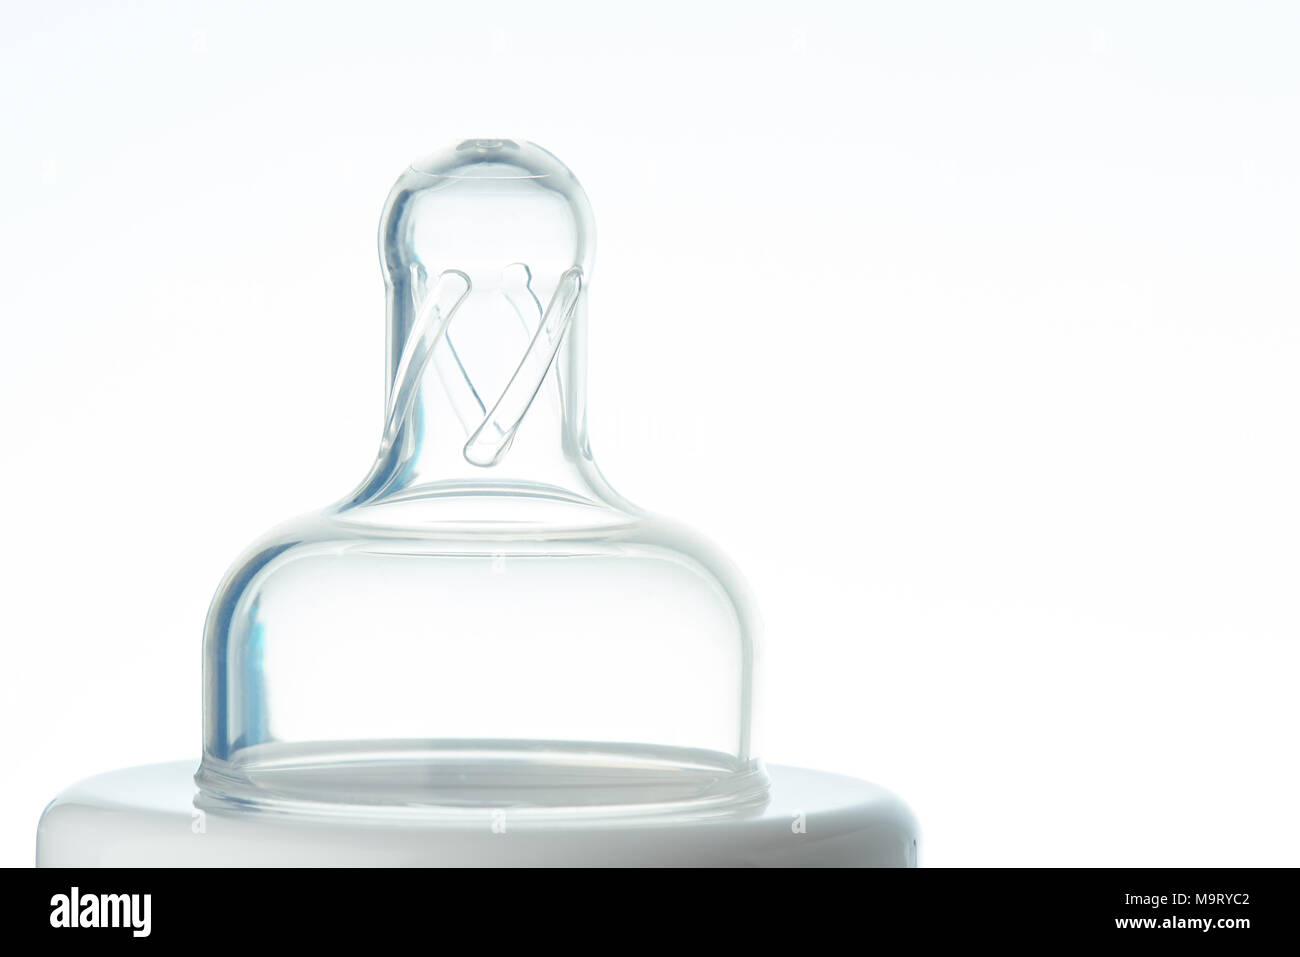 Close up of bouteille transparente mamelon isolé sur fond blanc Banque D'Images